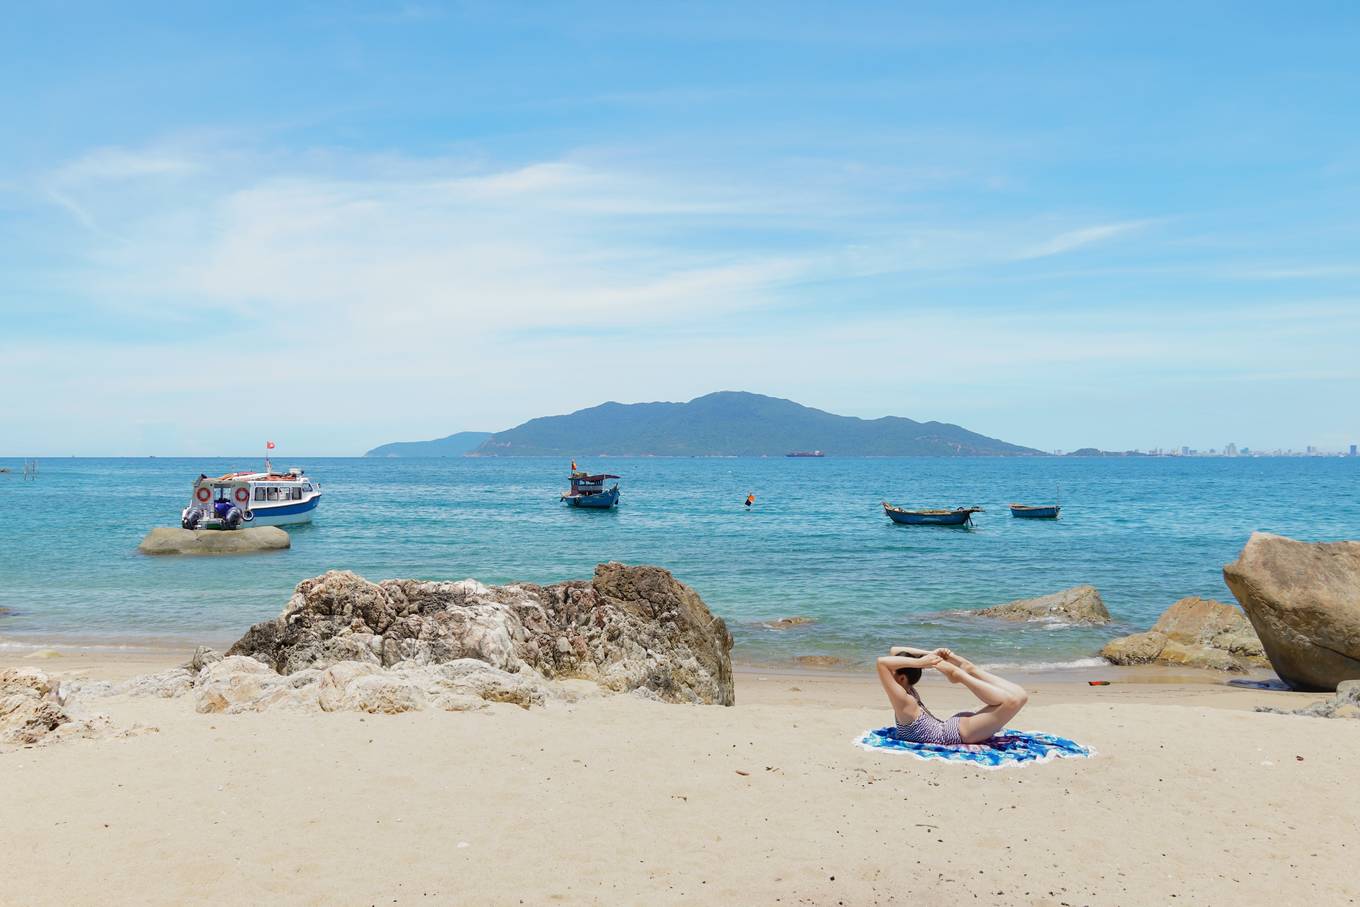 Hòn đảo hình chiếc chảo úp ngược giữa biển Đà Nẵng - Huế